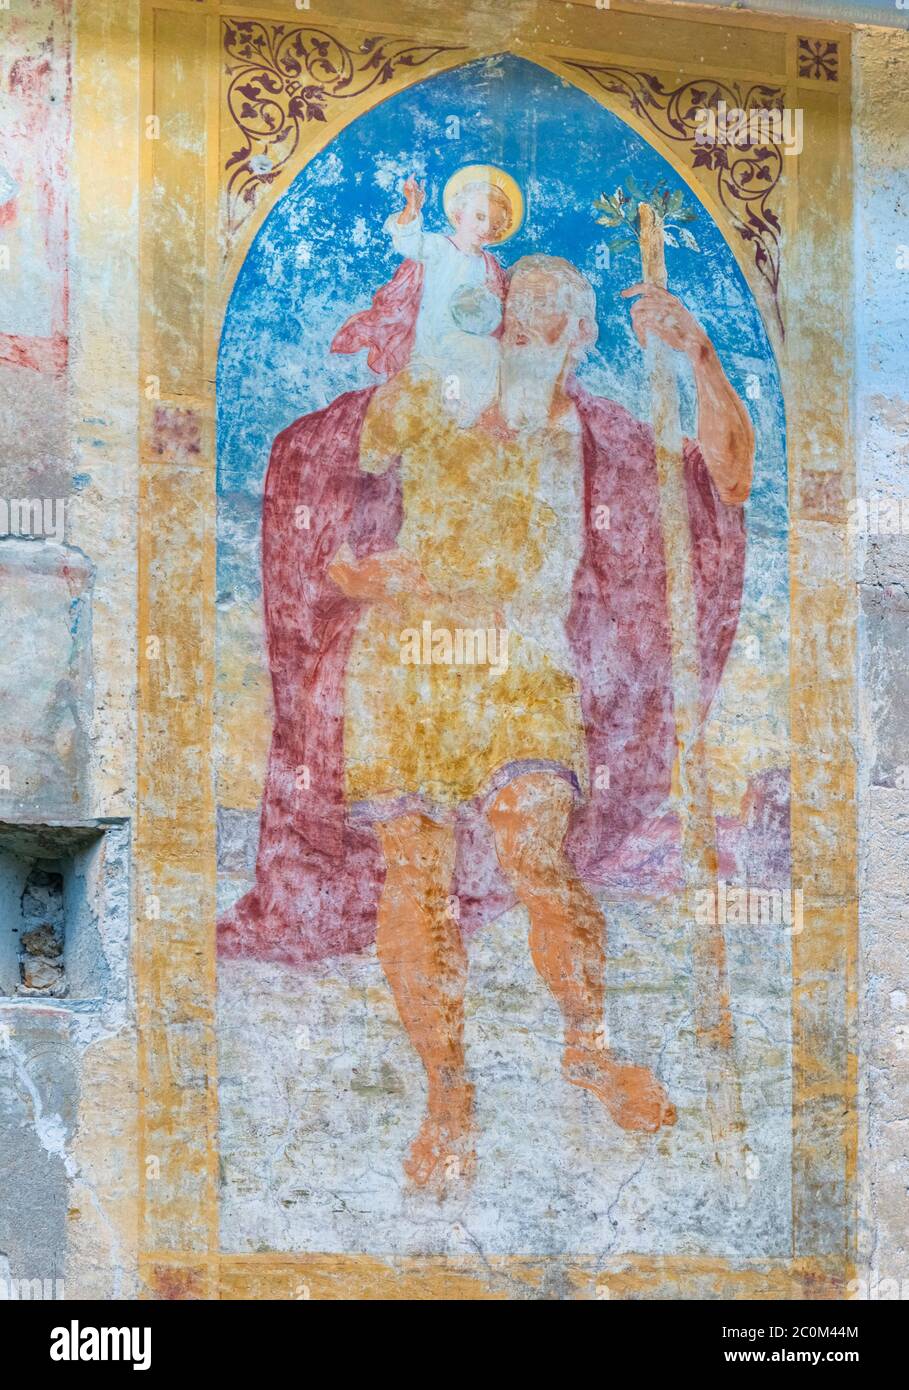 Fresco de San Cristóbal en una pared exterior de la iglesia románico-gótica de San Juan Bautista que fue construido alrededor de 1100 en las orillas del lago Foto de stock